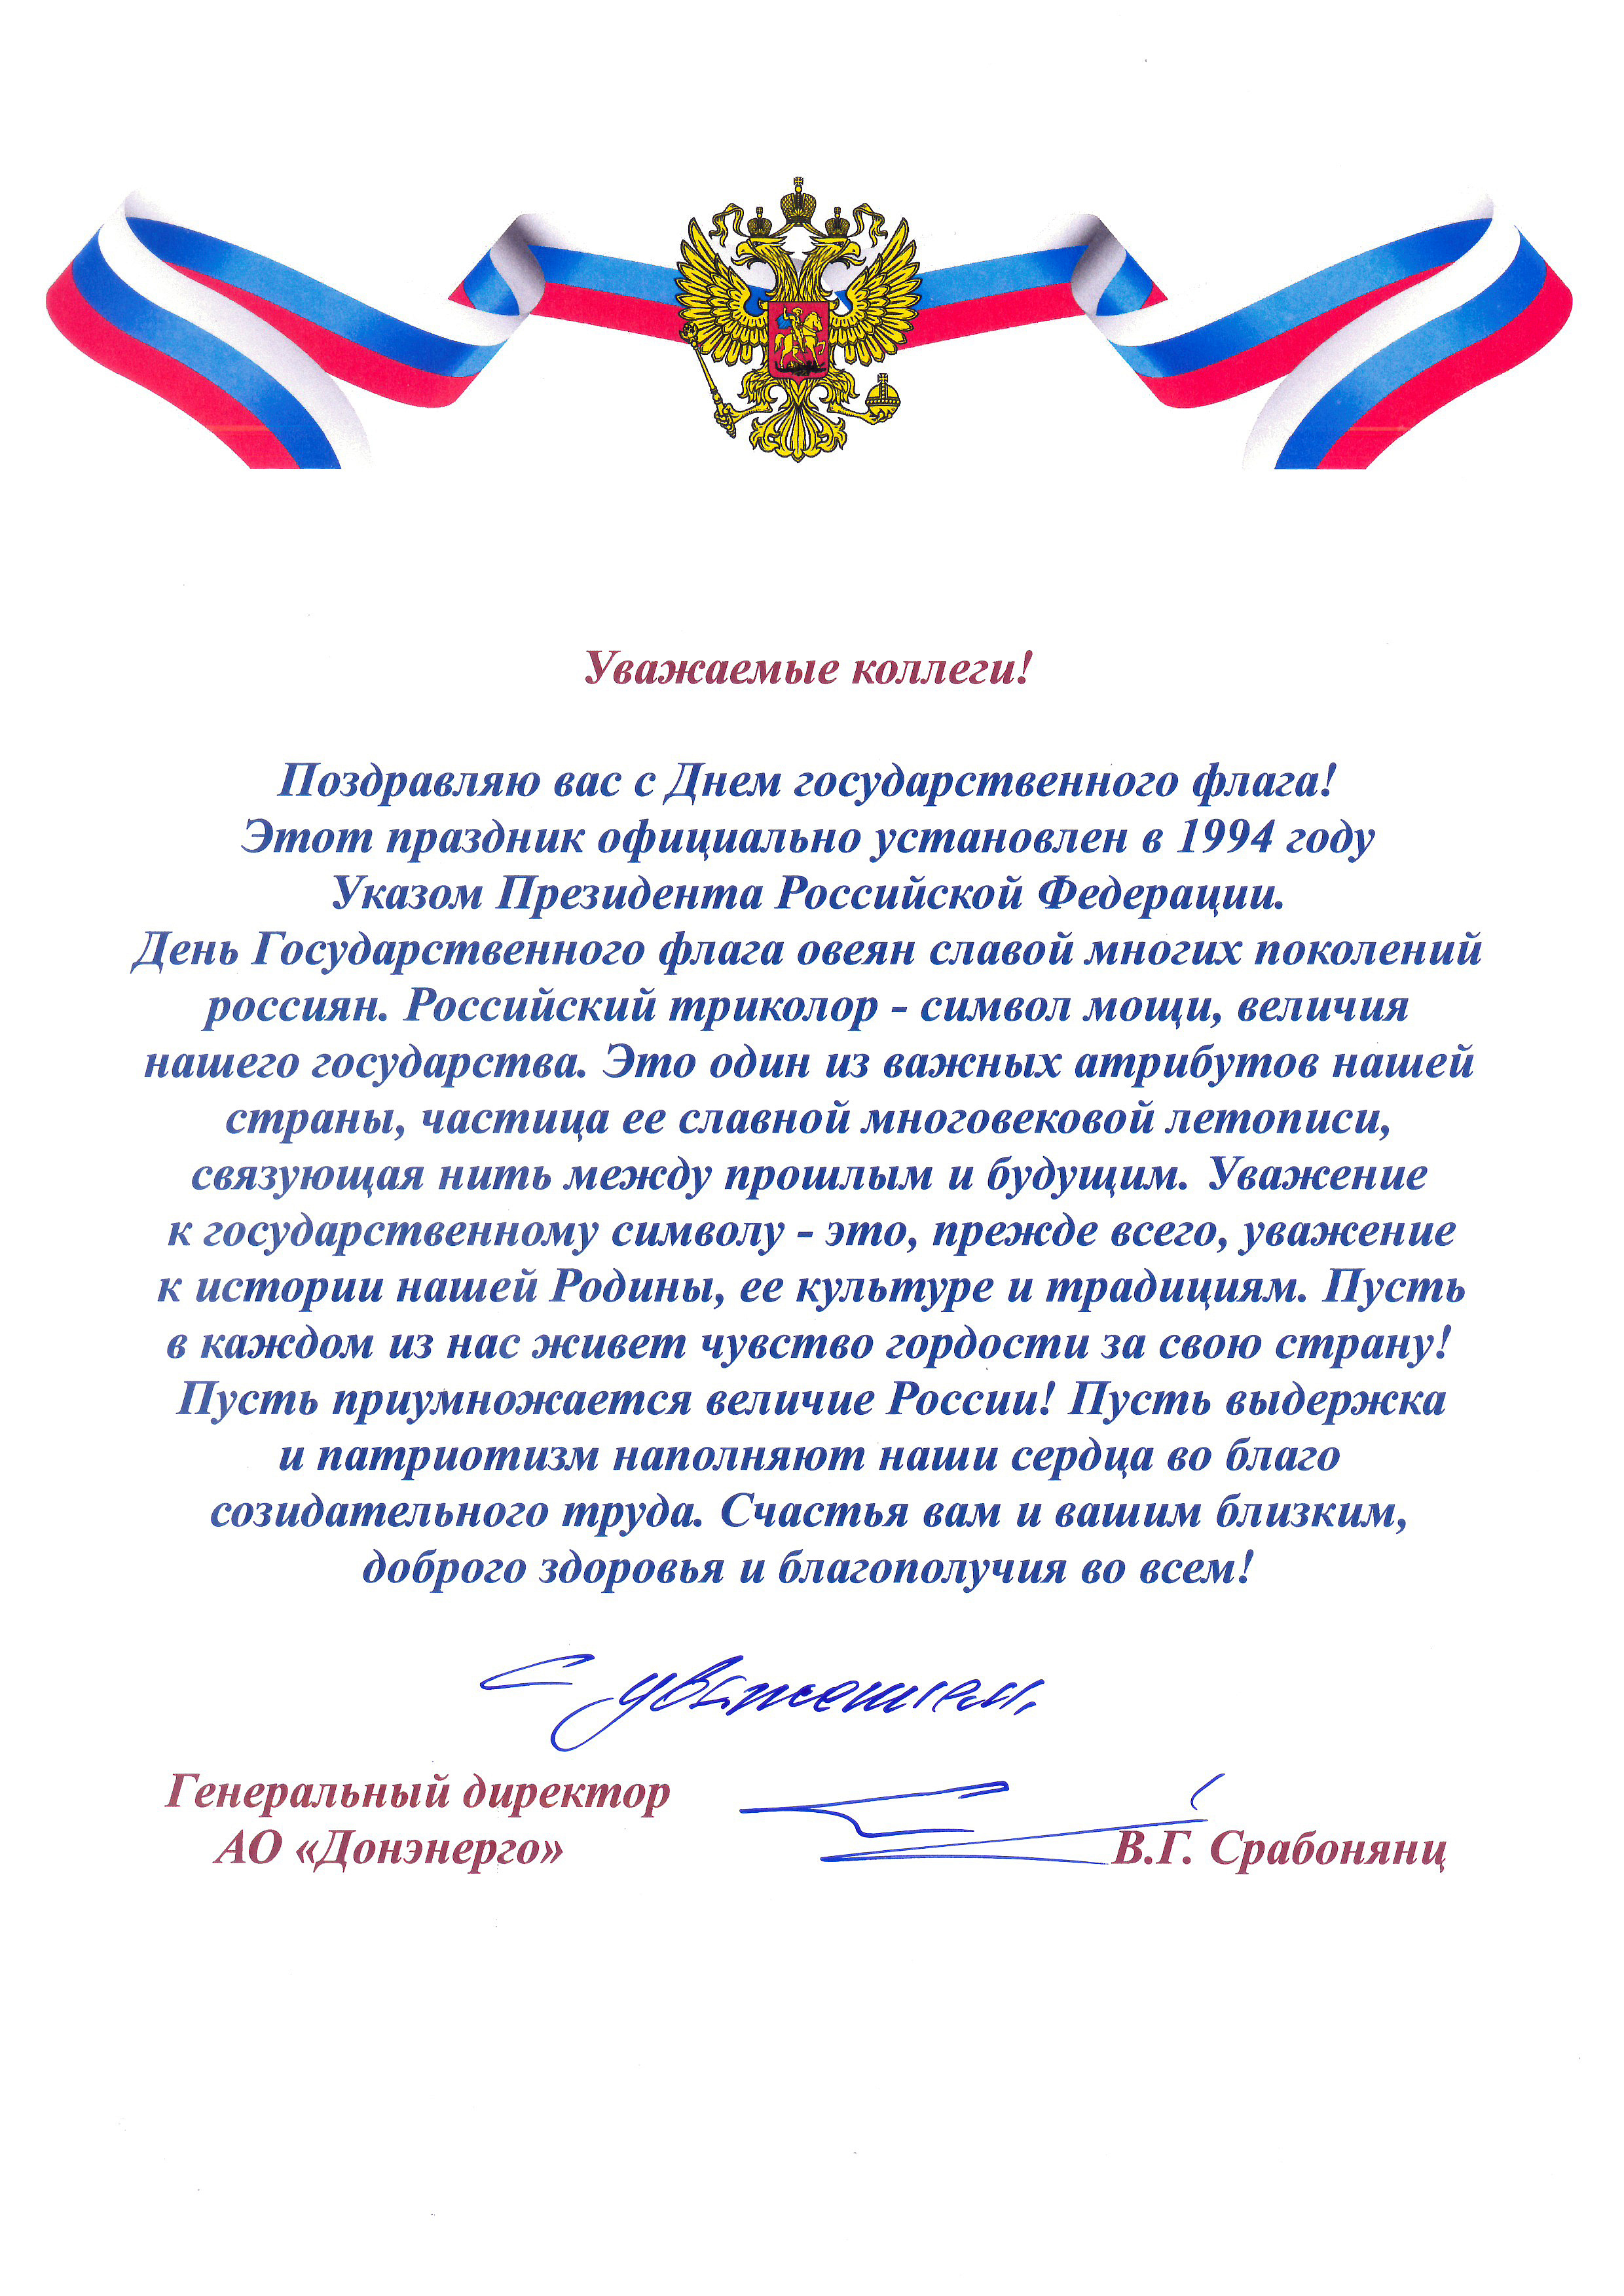 Поздравление генерального директора АО «Донэнерго» В.Г. Срабонянц с Днём Государственного флага Российской Федерации